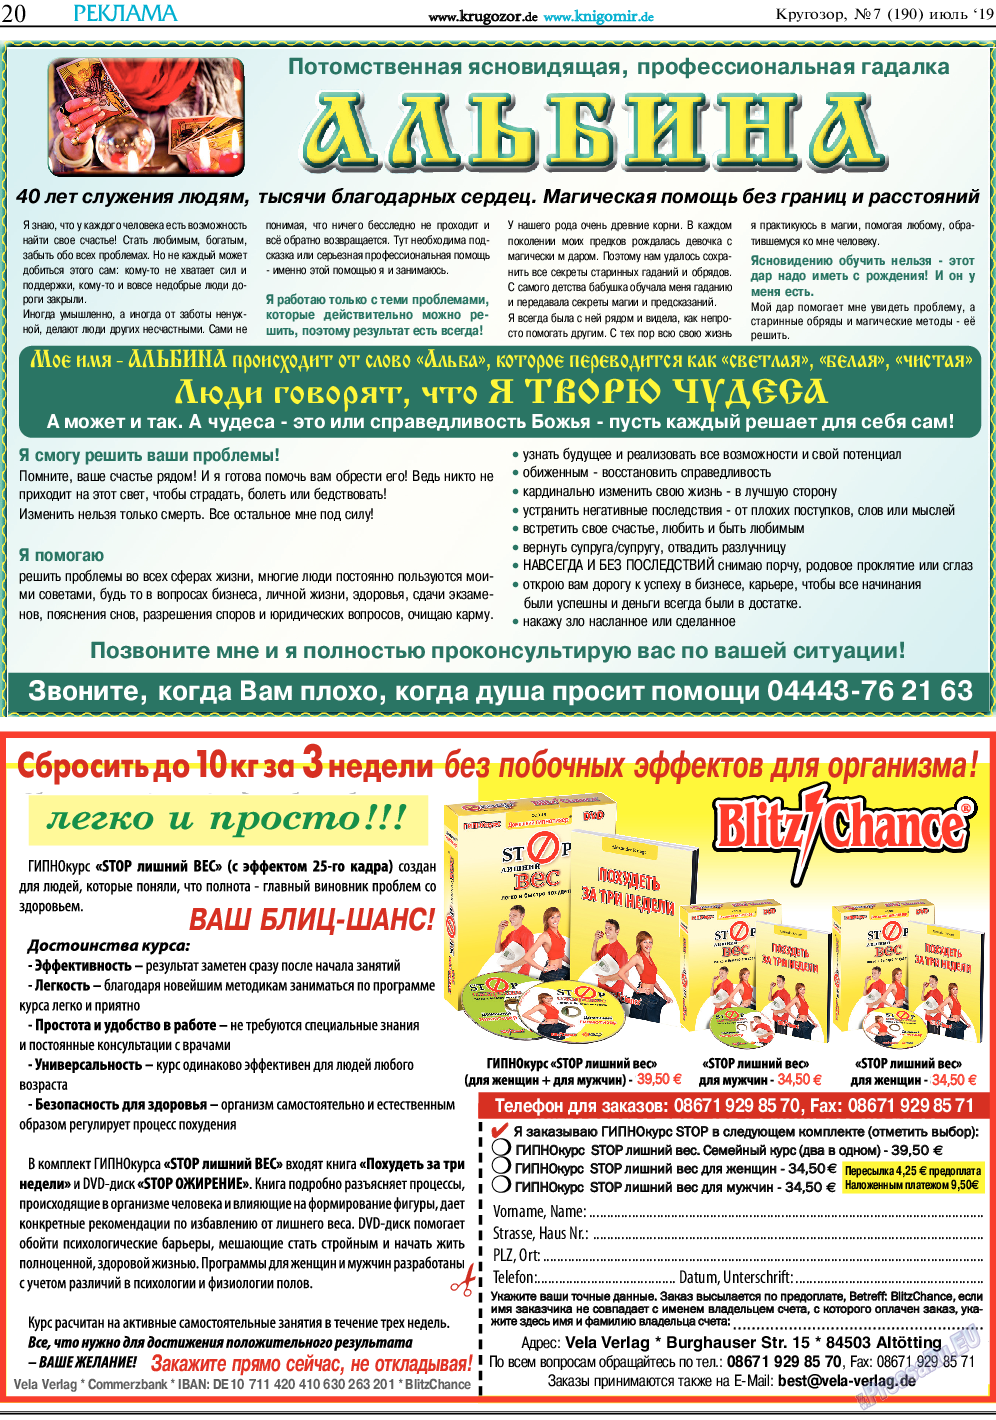 Кругозор, газета. 2019 №7 стр.20